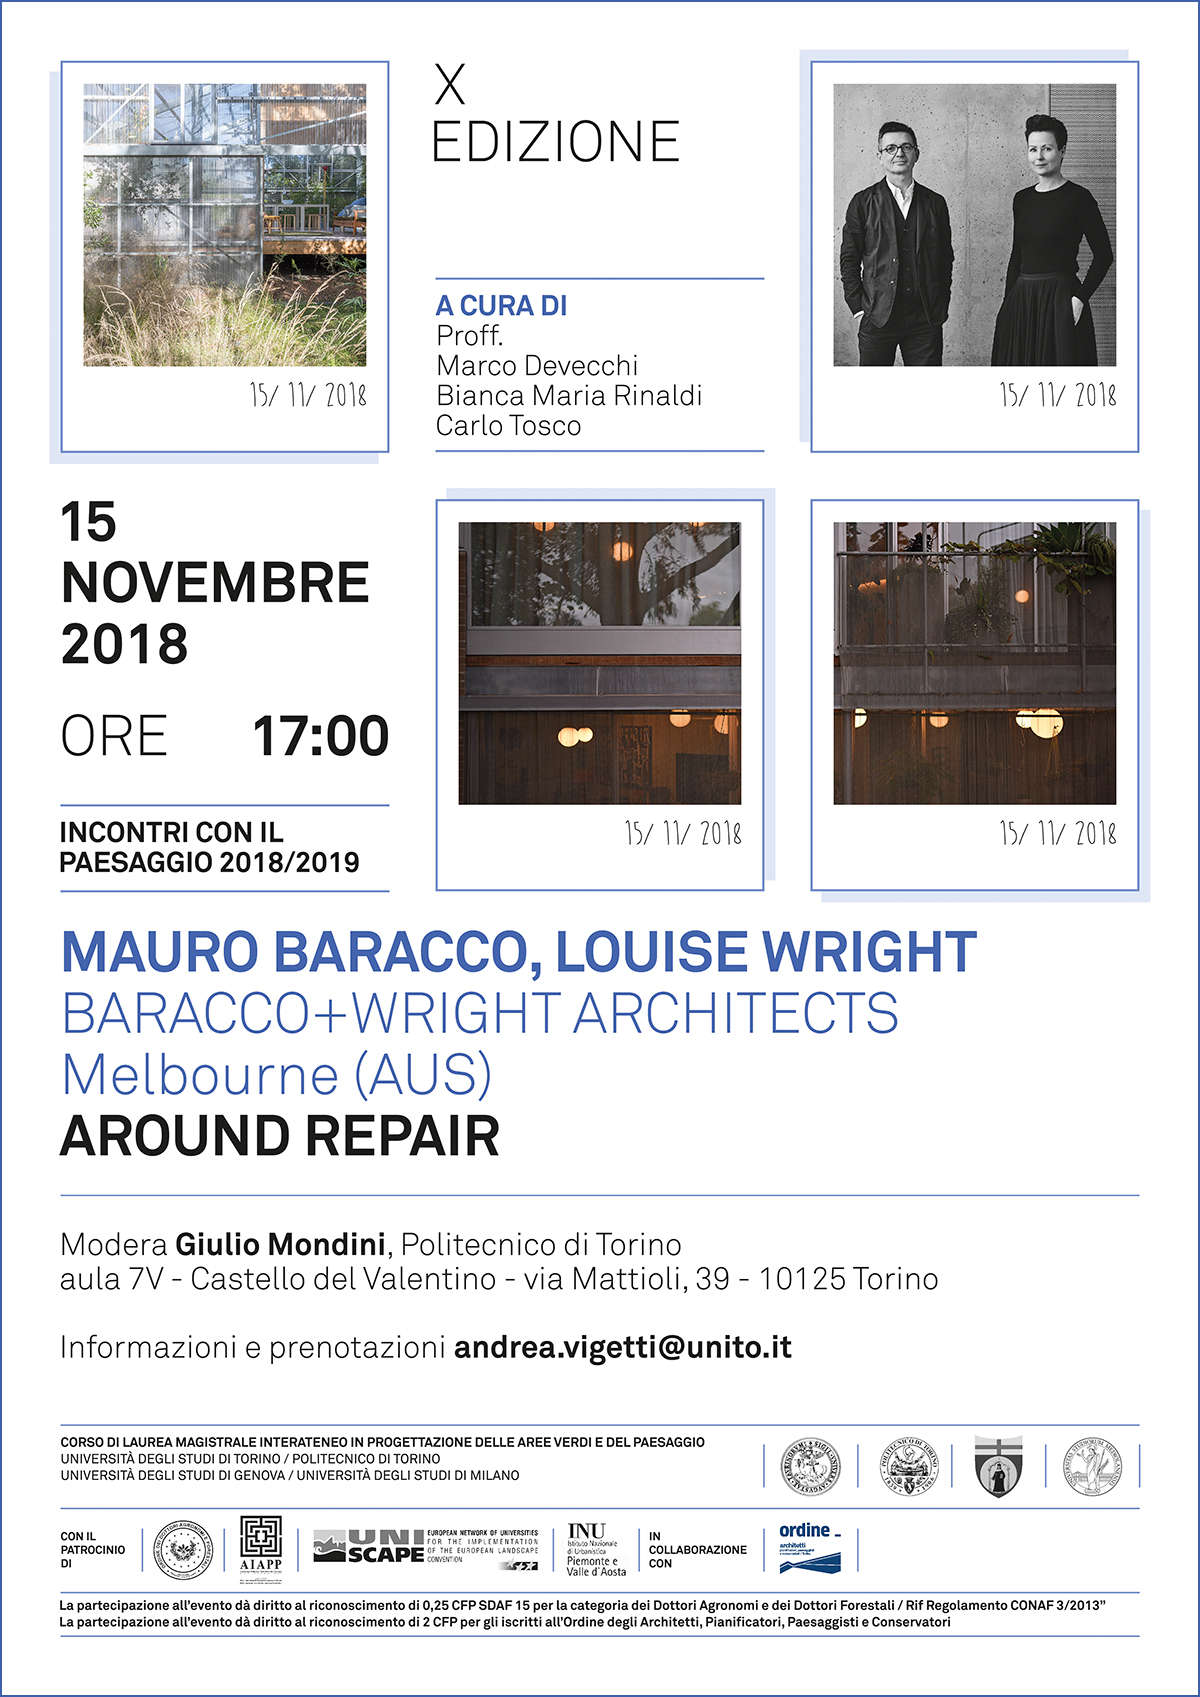 Seminario di Mauro Baracco e Louise Wright su Around repair, Aula 7 V del Castello del Valentino a Torino, giovedì 15 novembre 2018.